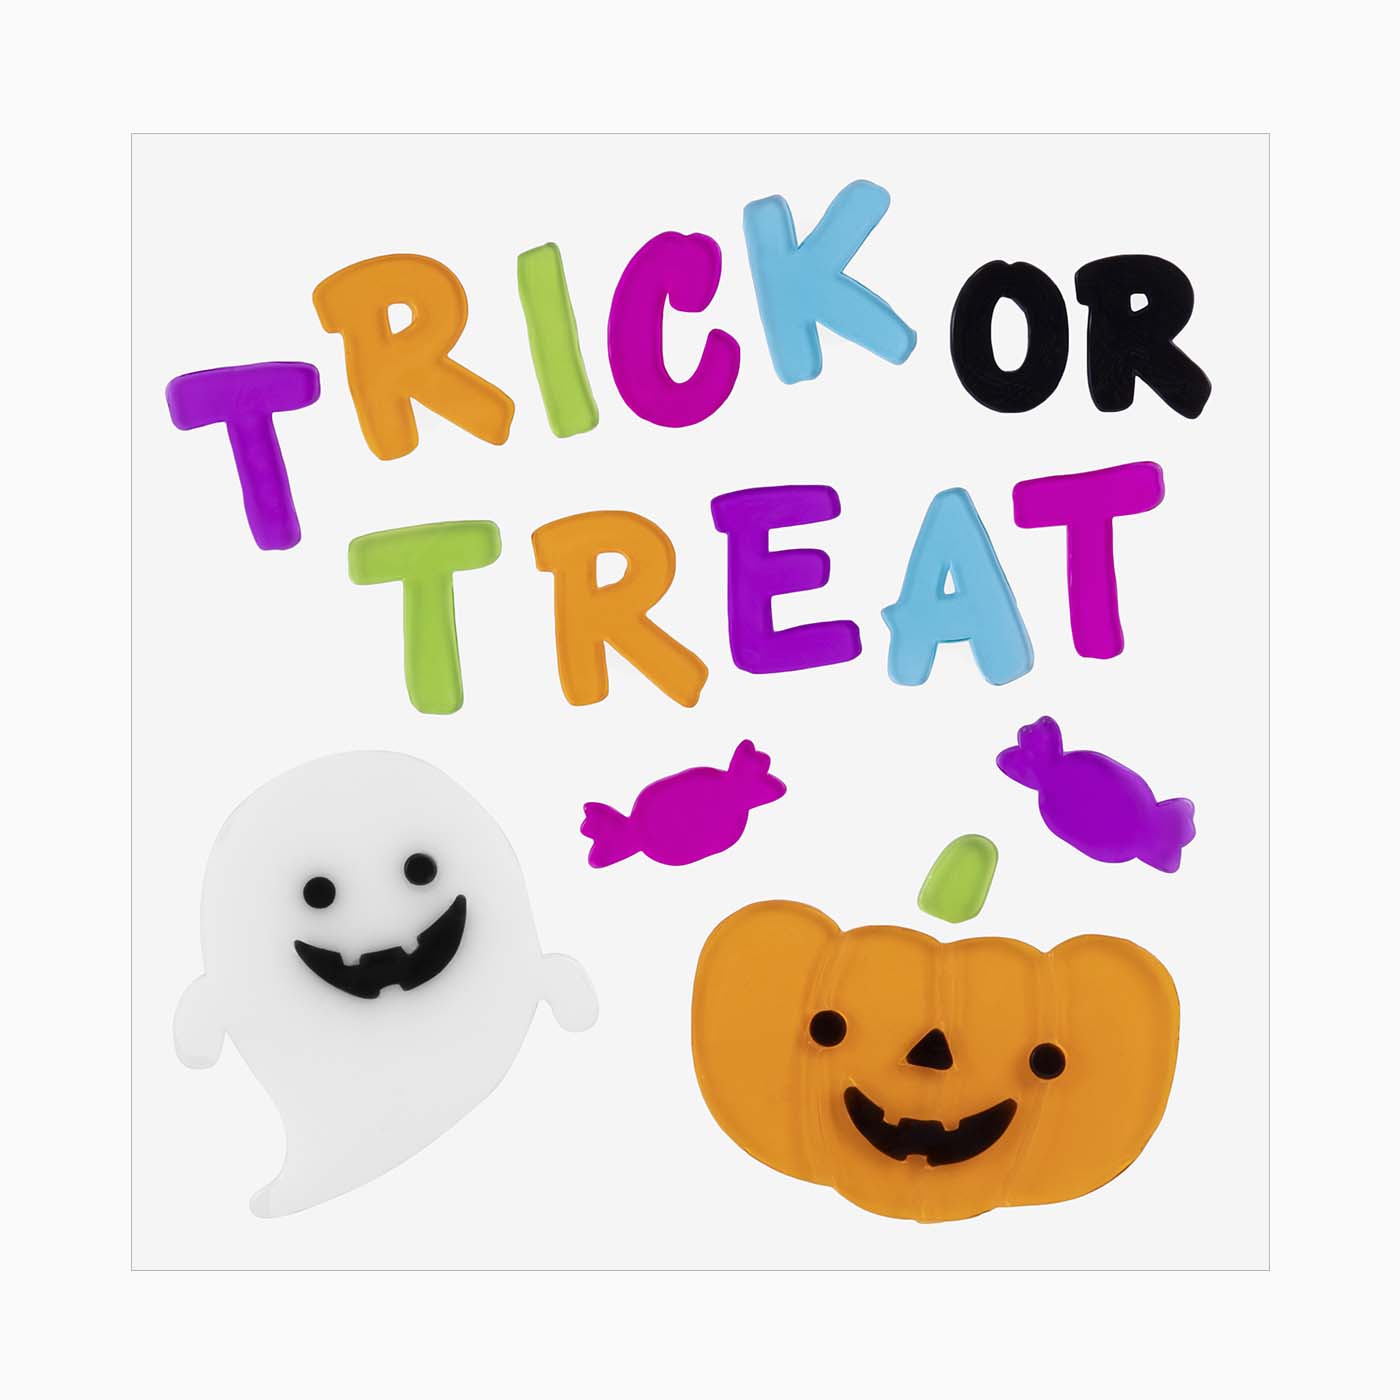 Autocollant en gel "Trick or Treat" Halloween